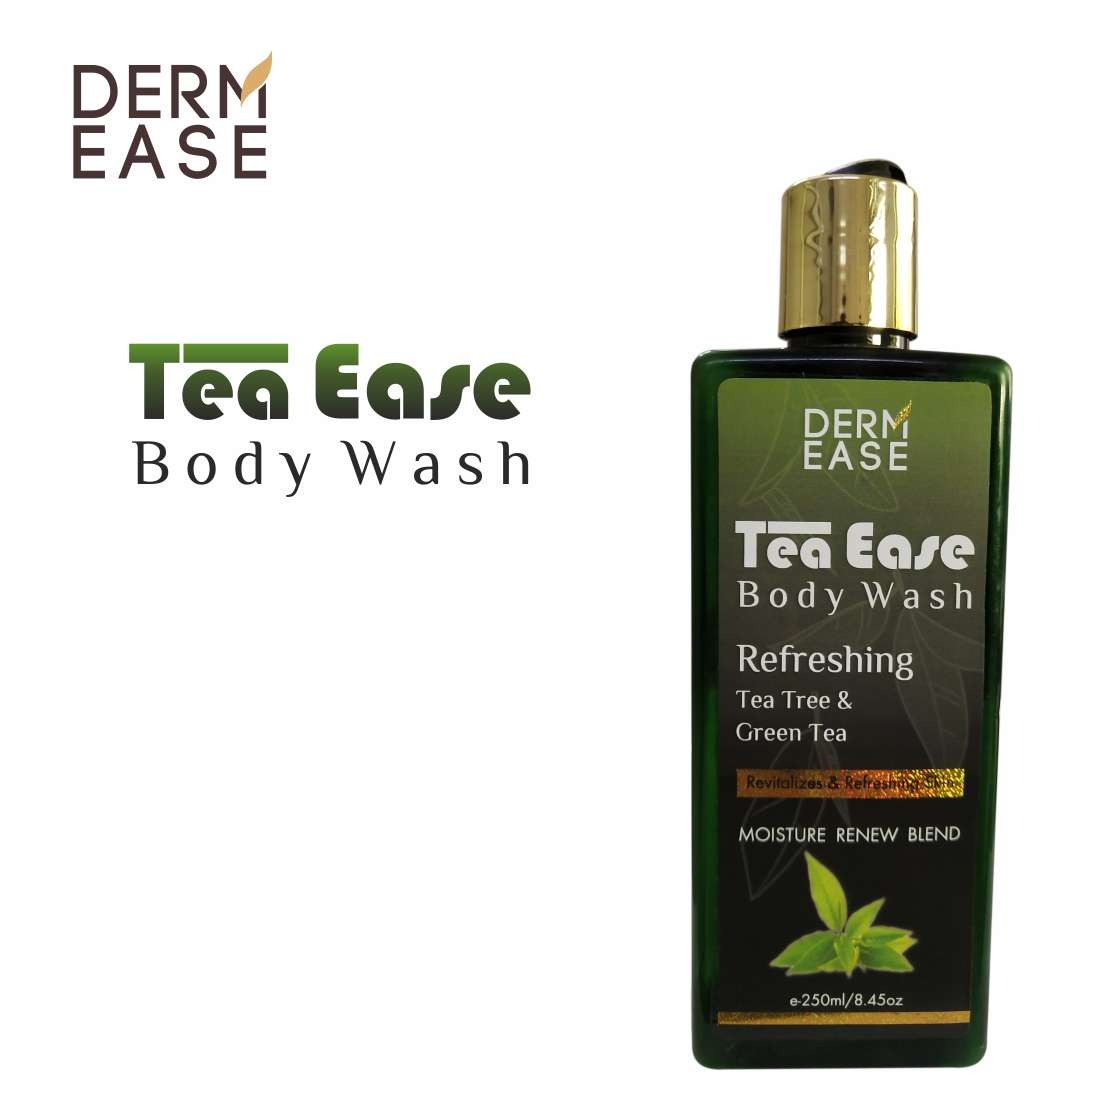 DERM EASE Tea Ease Body Wash